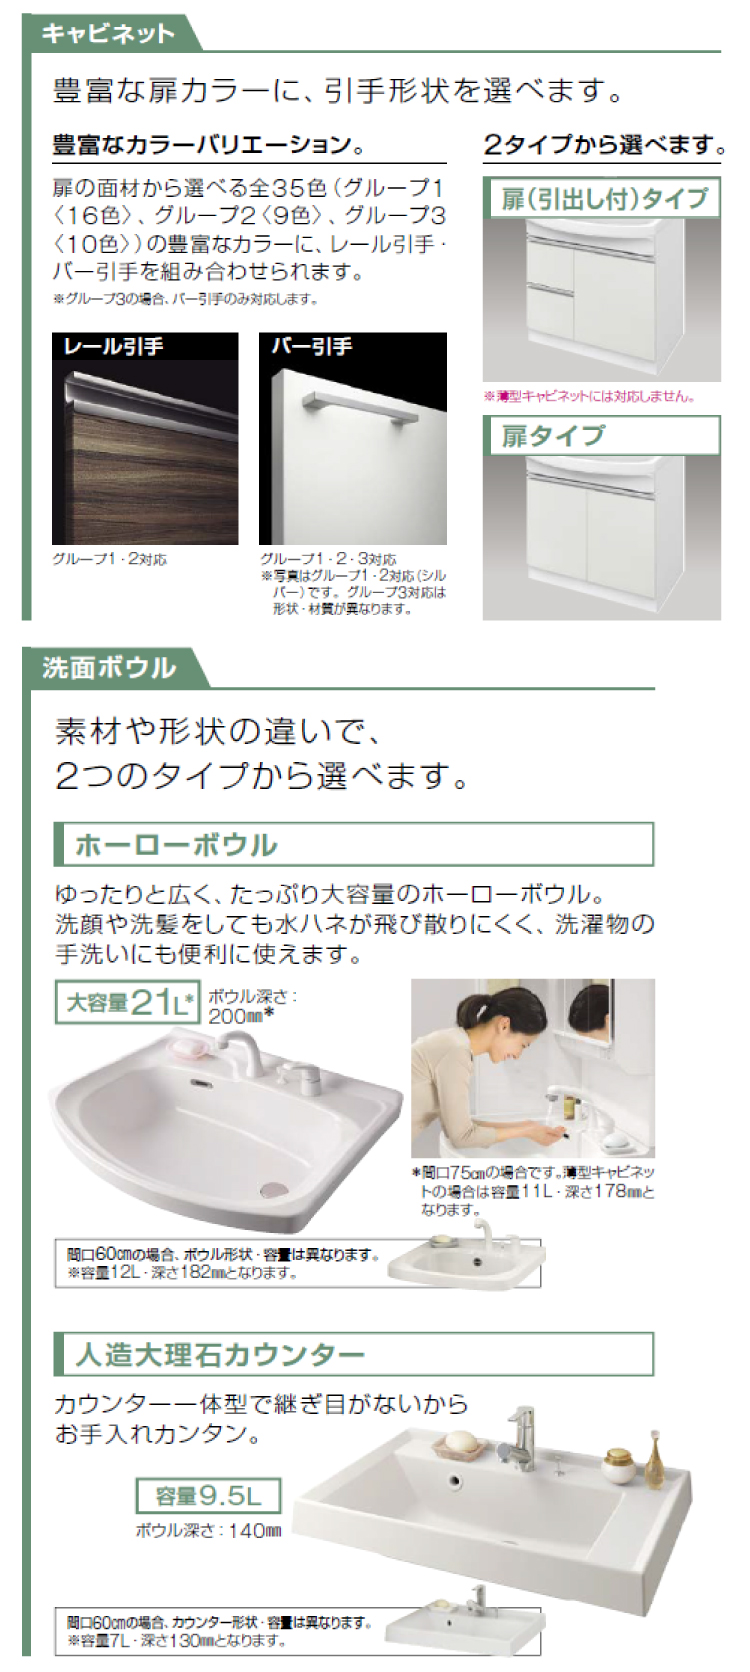 人気特価激安 カクダイ 角型手洗器 493-057